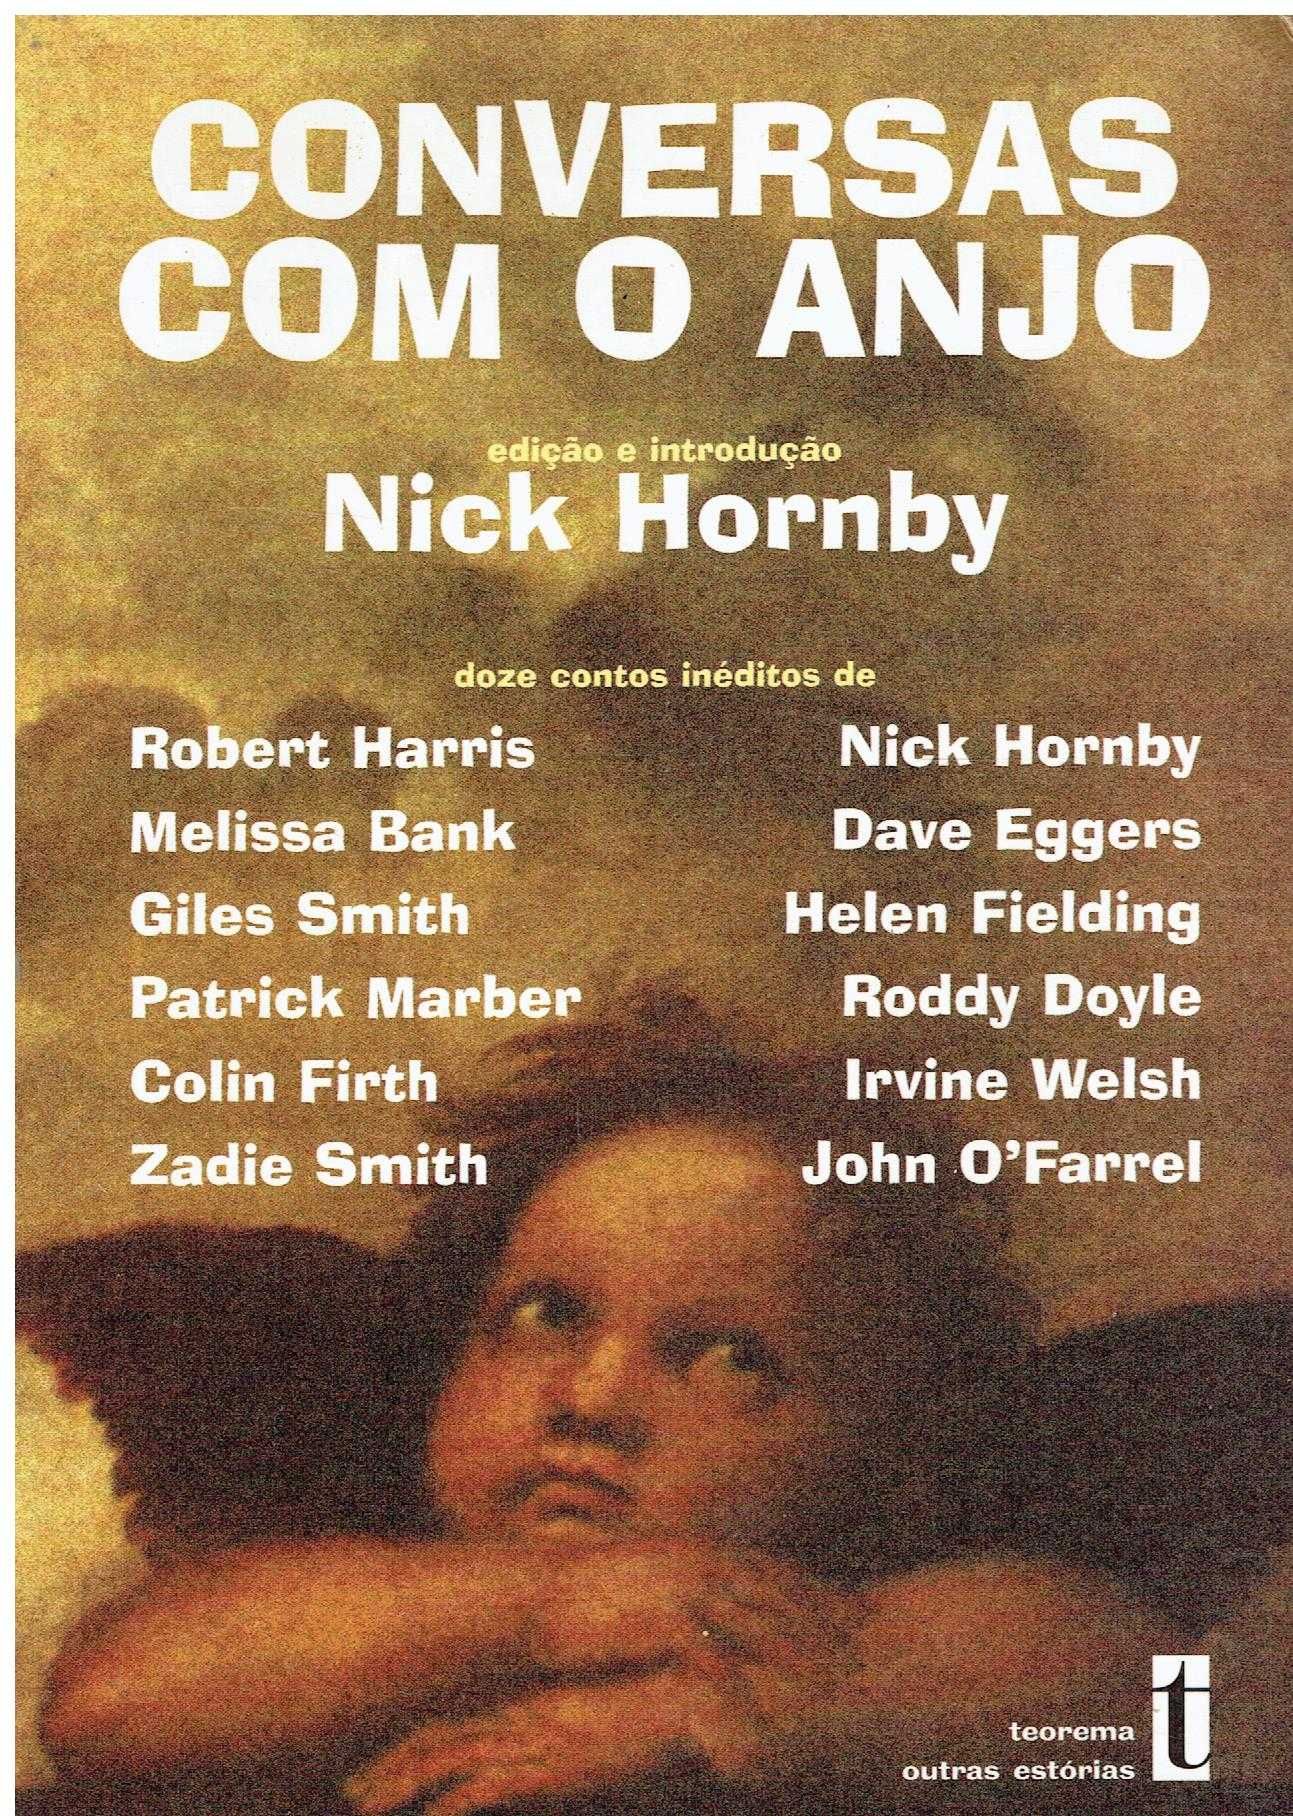 11984

Conversas Com o Anjo
de Nick Hornby